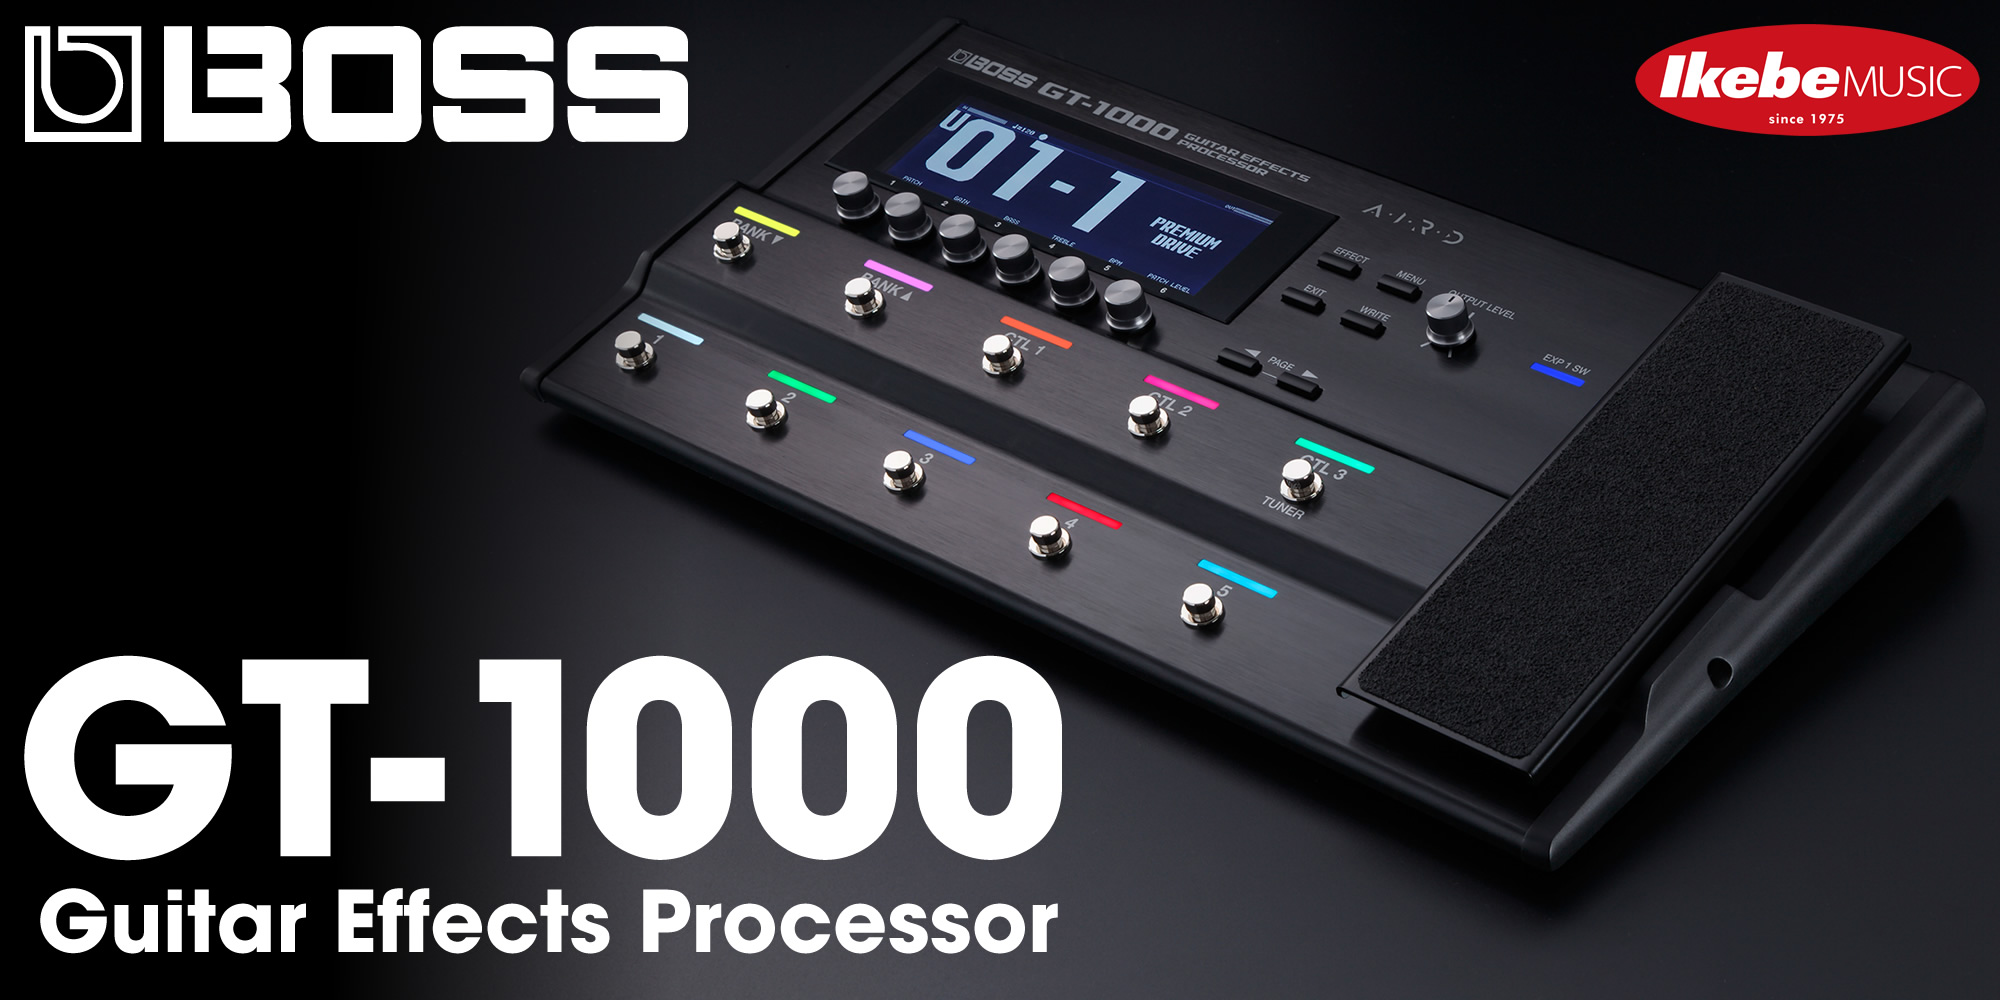 BOSS GT-1000|Guitar Effects Processor